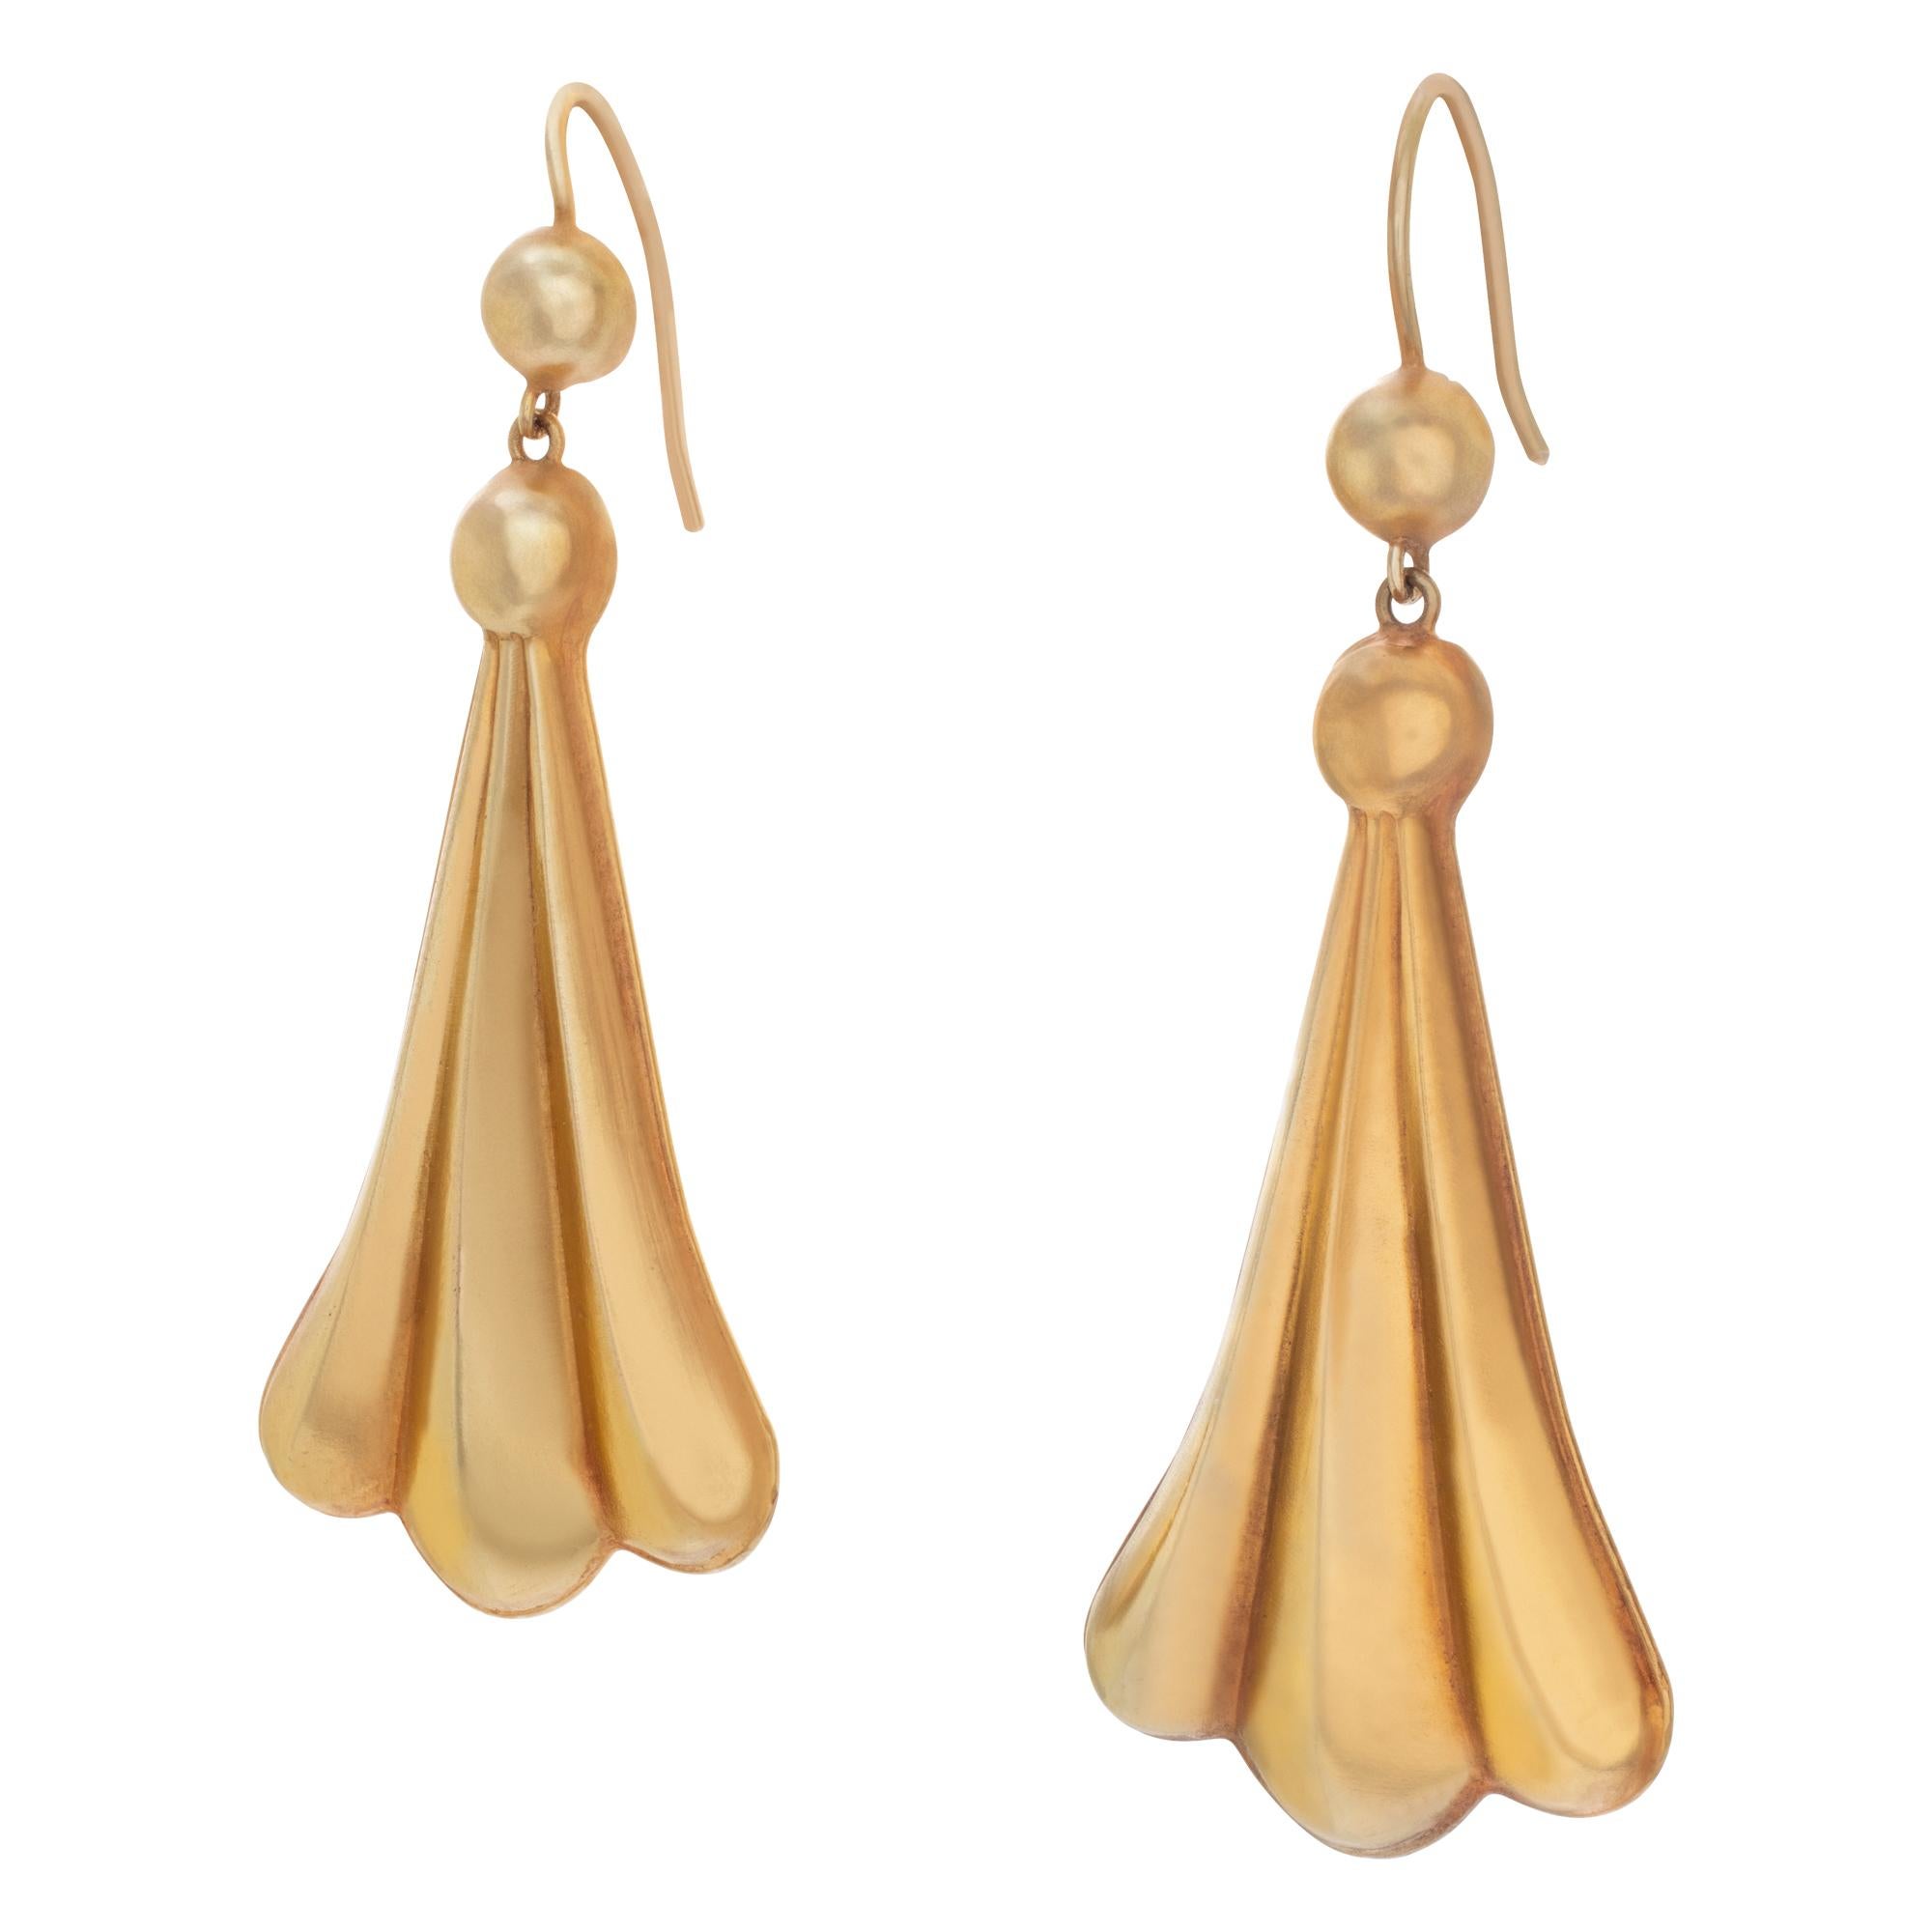 Greek shell shaped drop earrings in 18k yellow gold. Length 50